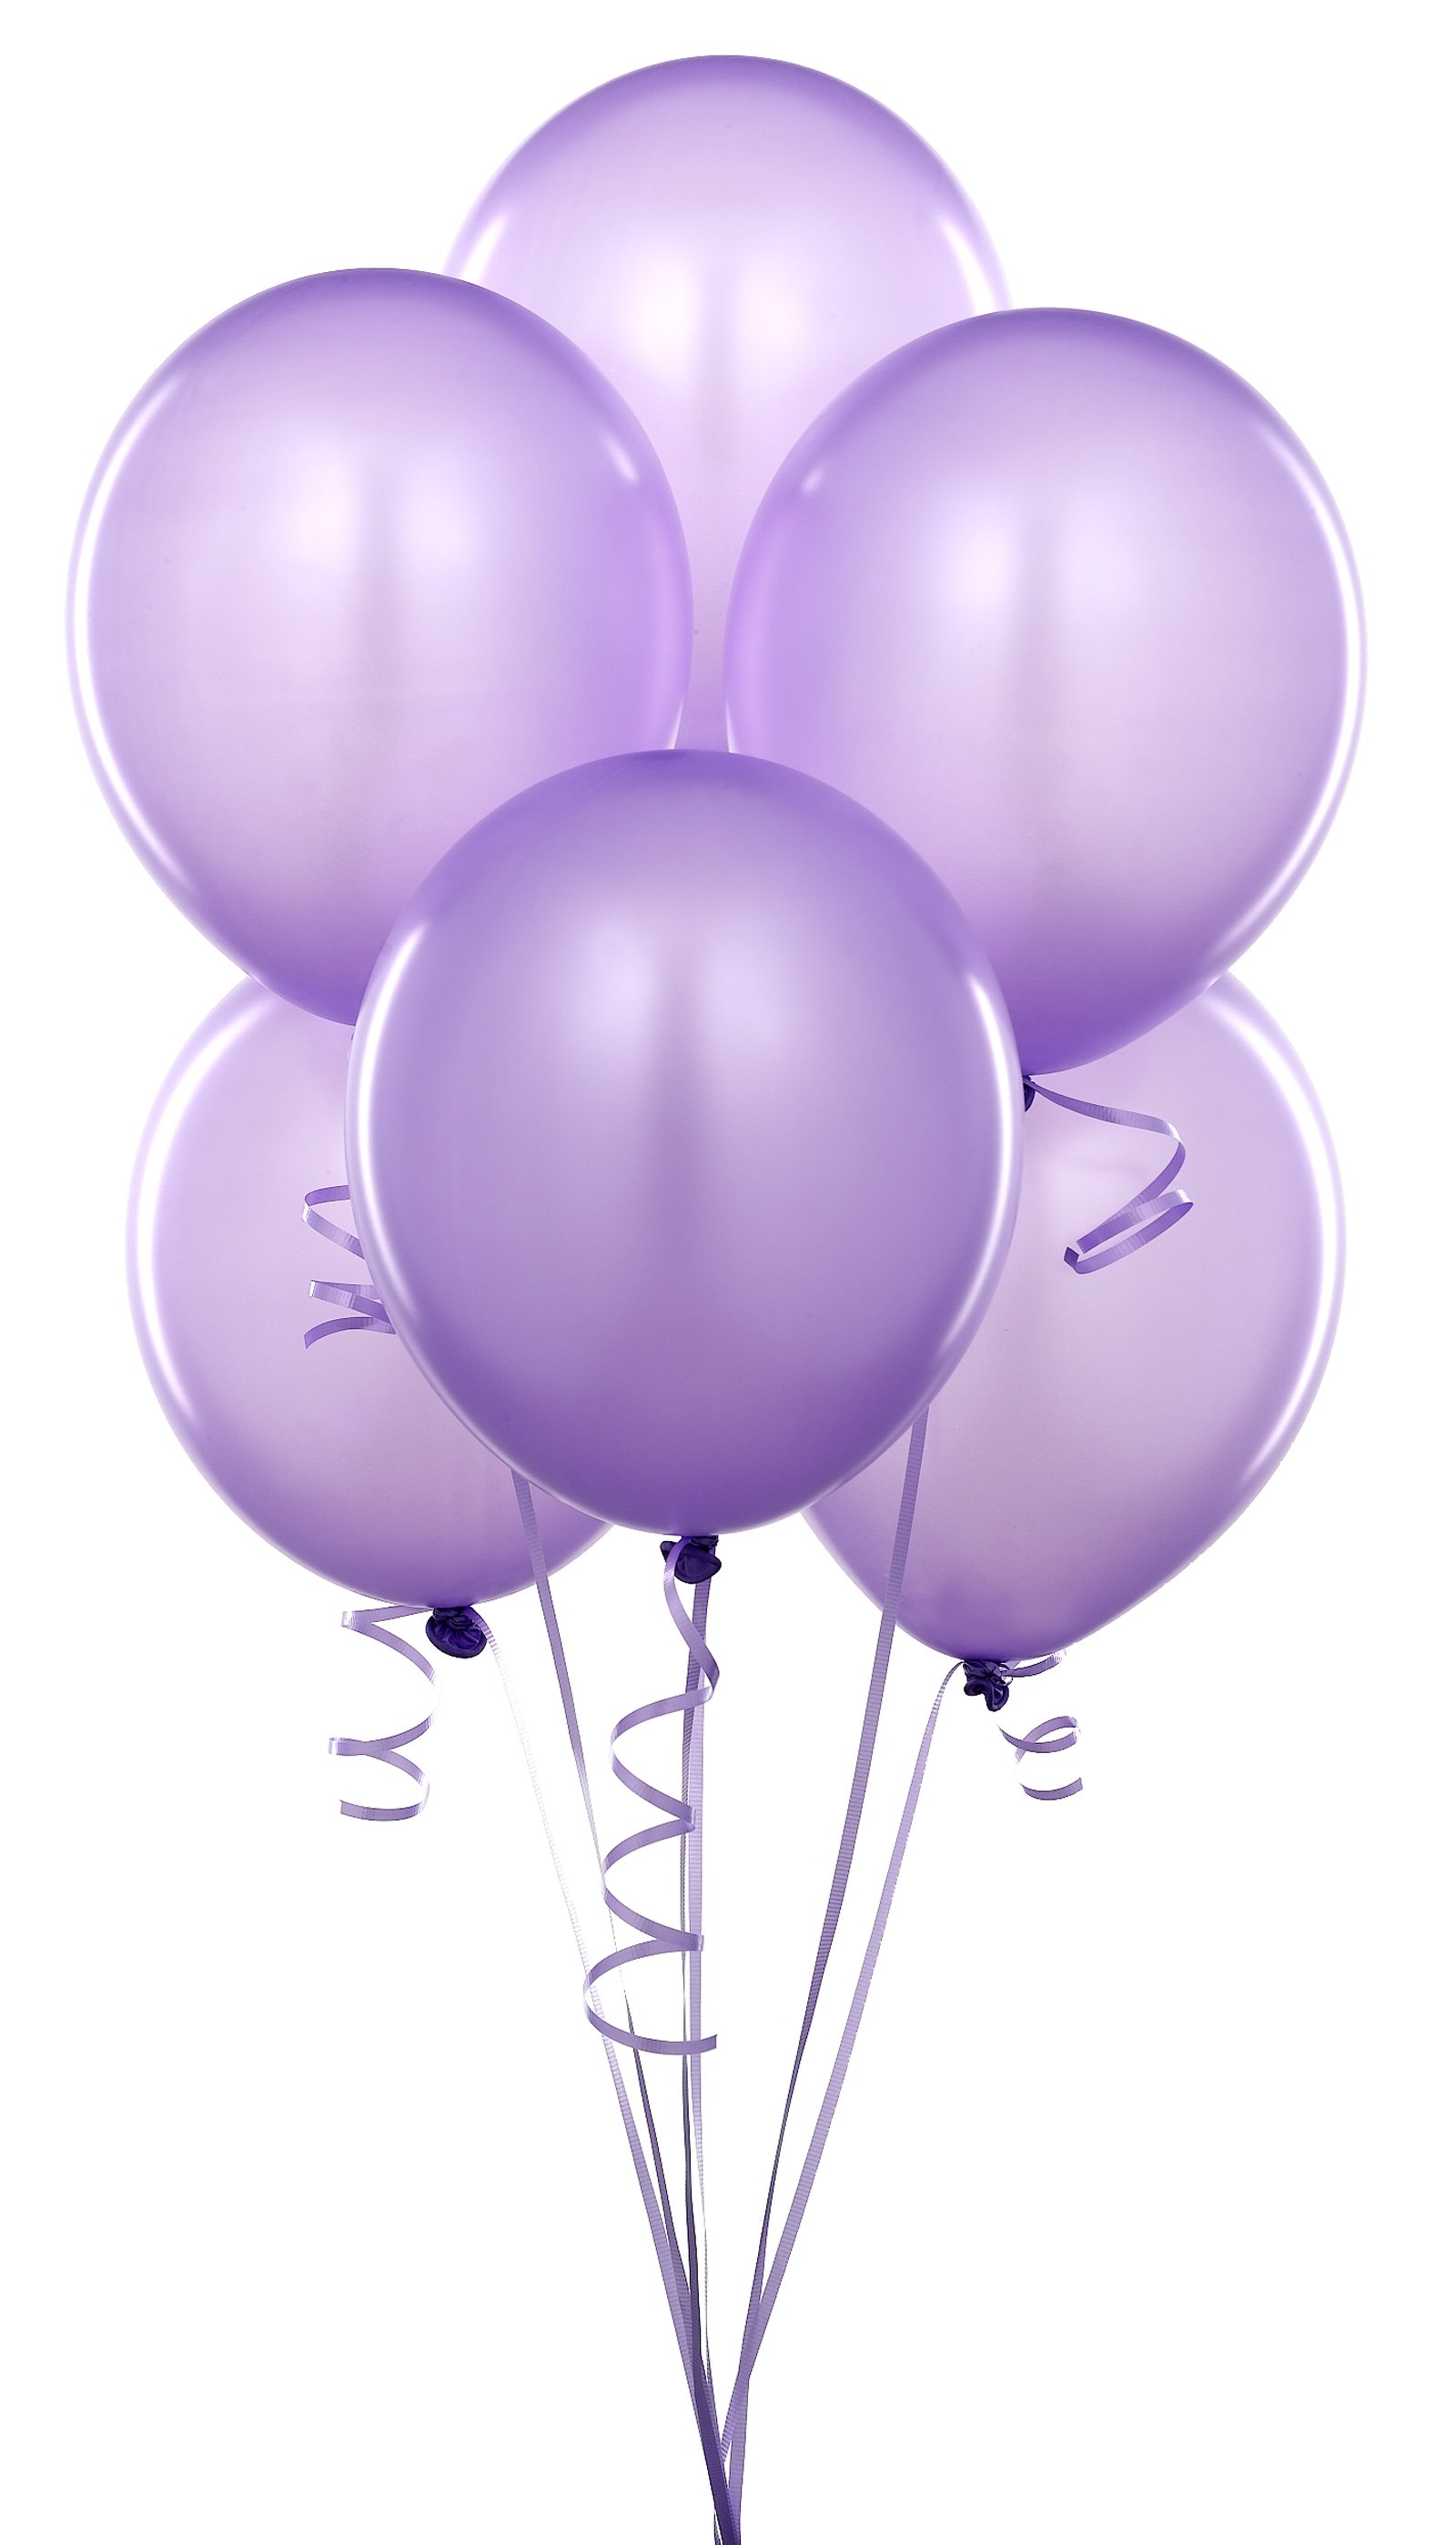 balloons, purple